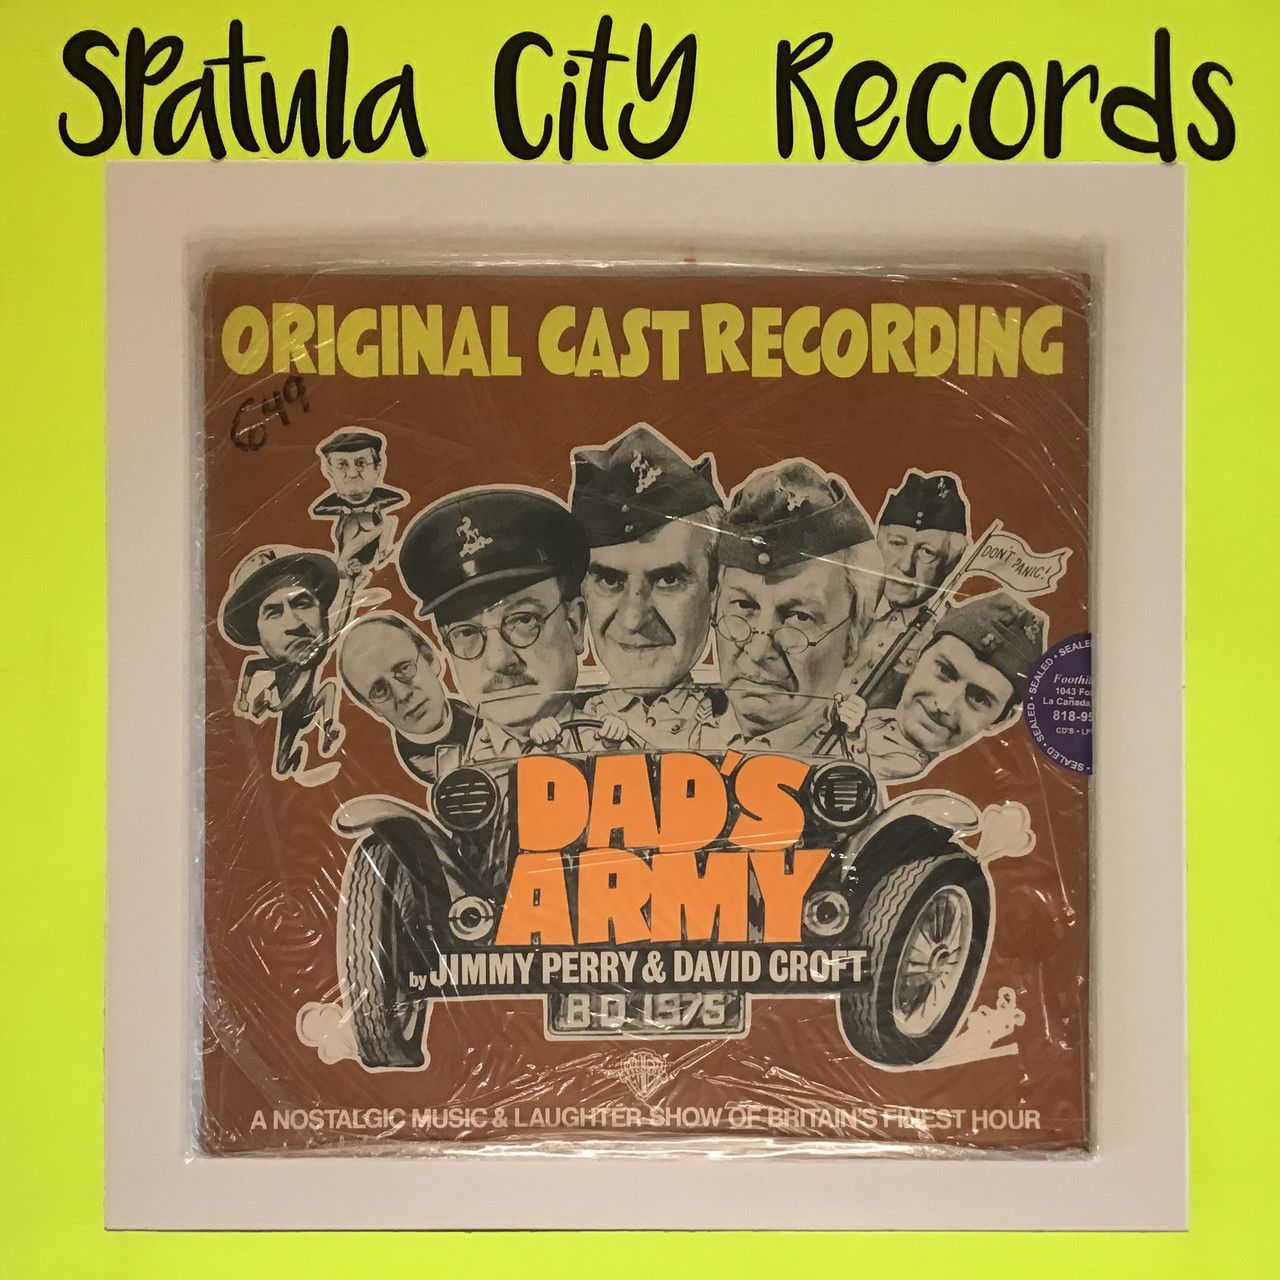 Dad's Army – Original Cast Recording - SEALED - UK IMPORT - vinyl record album LP